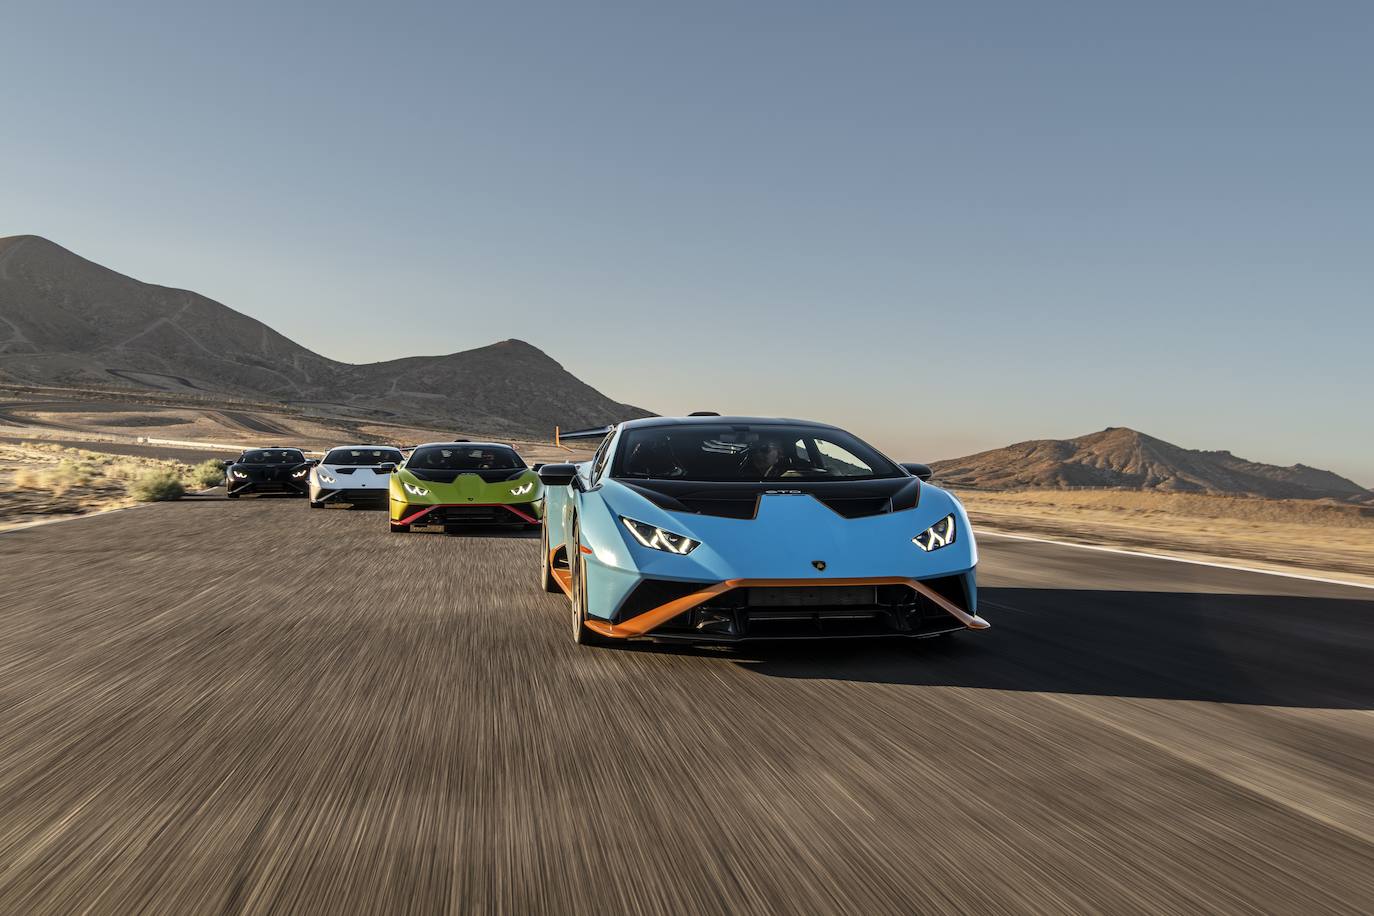 Fotos: Lamborghini Huracán: creado para carretera e inspirado en la competición